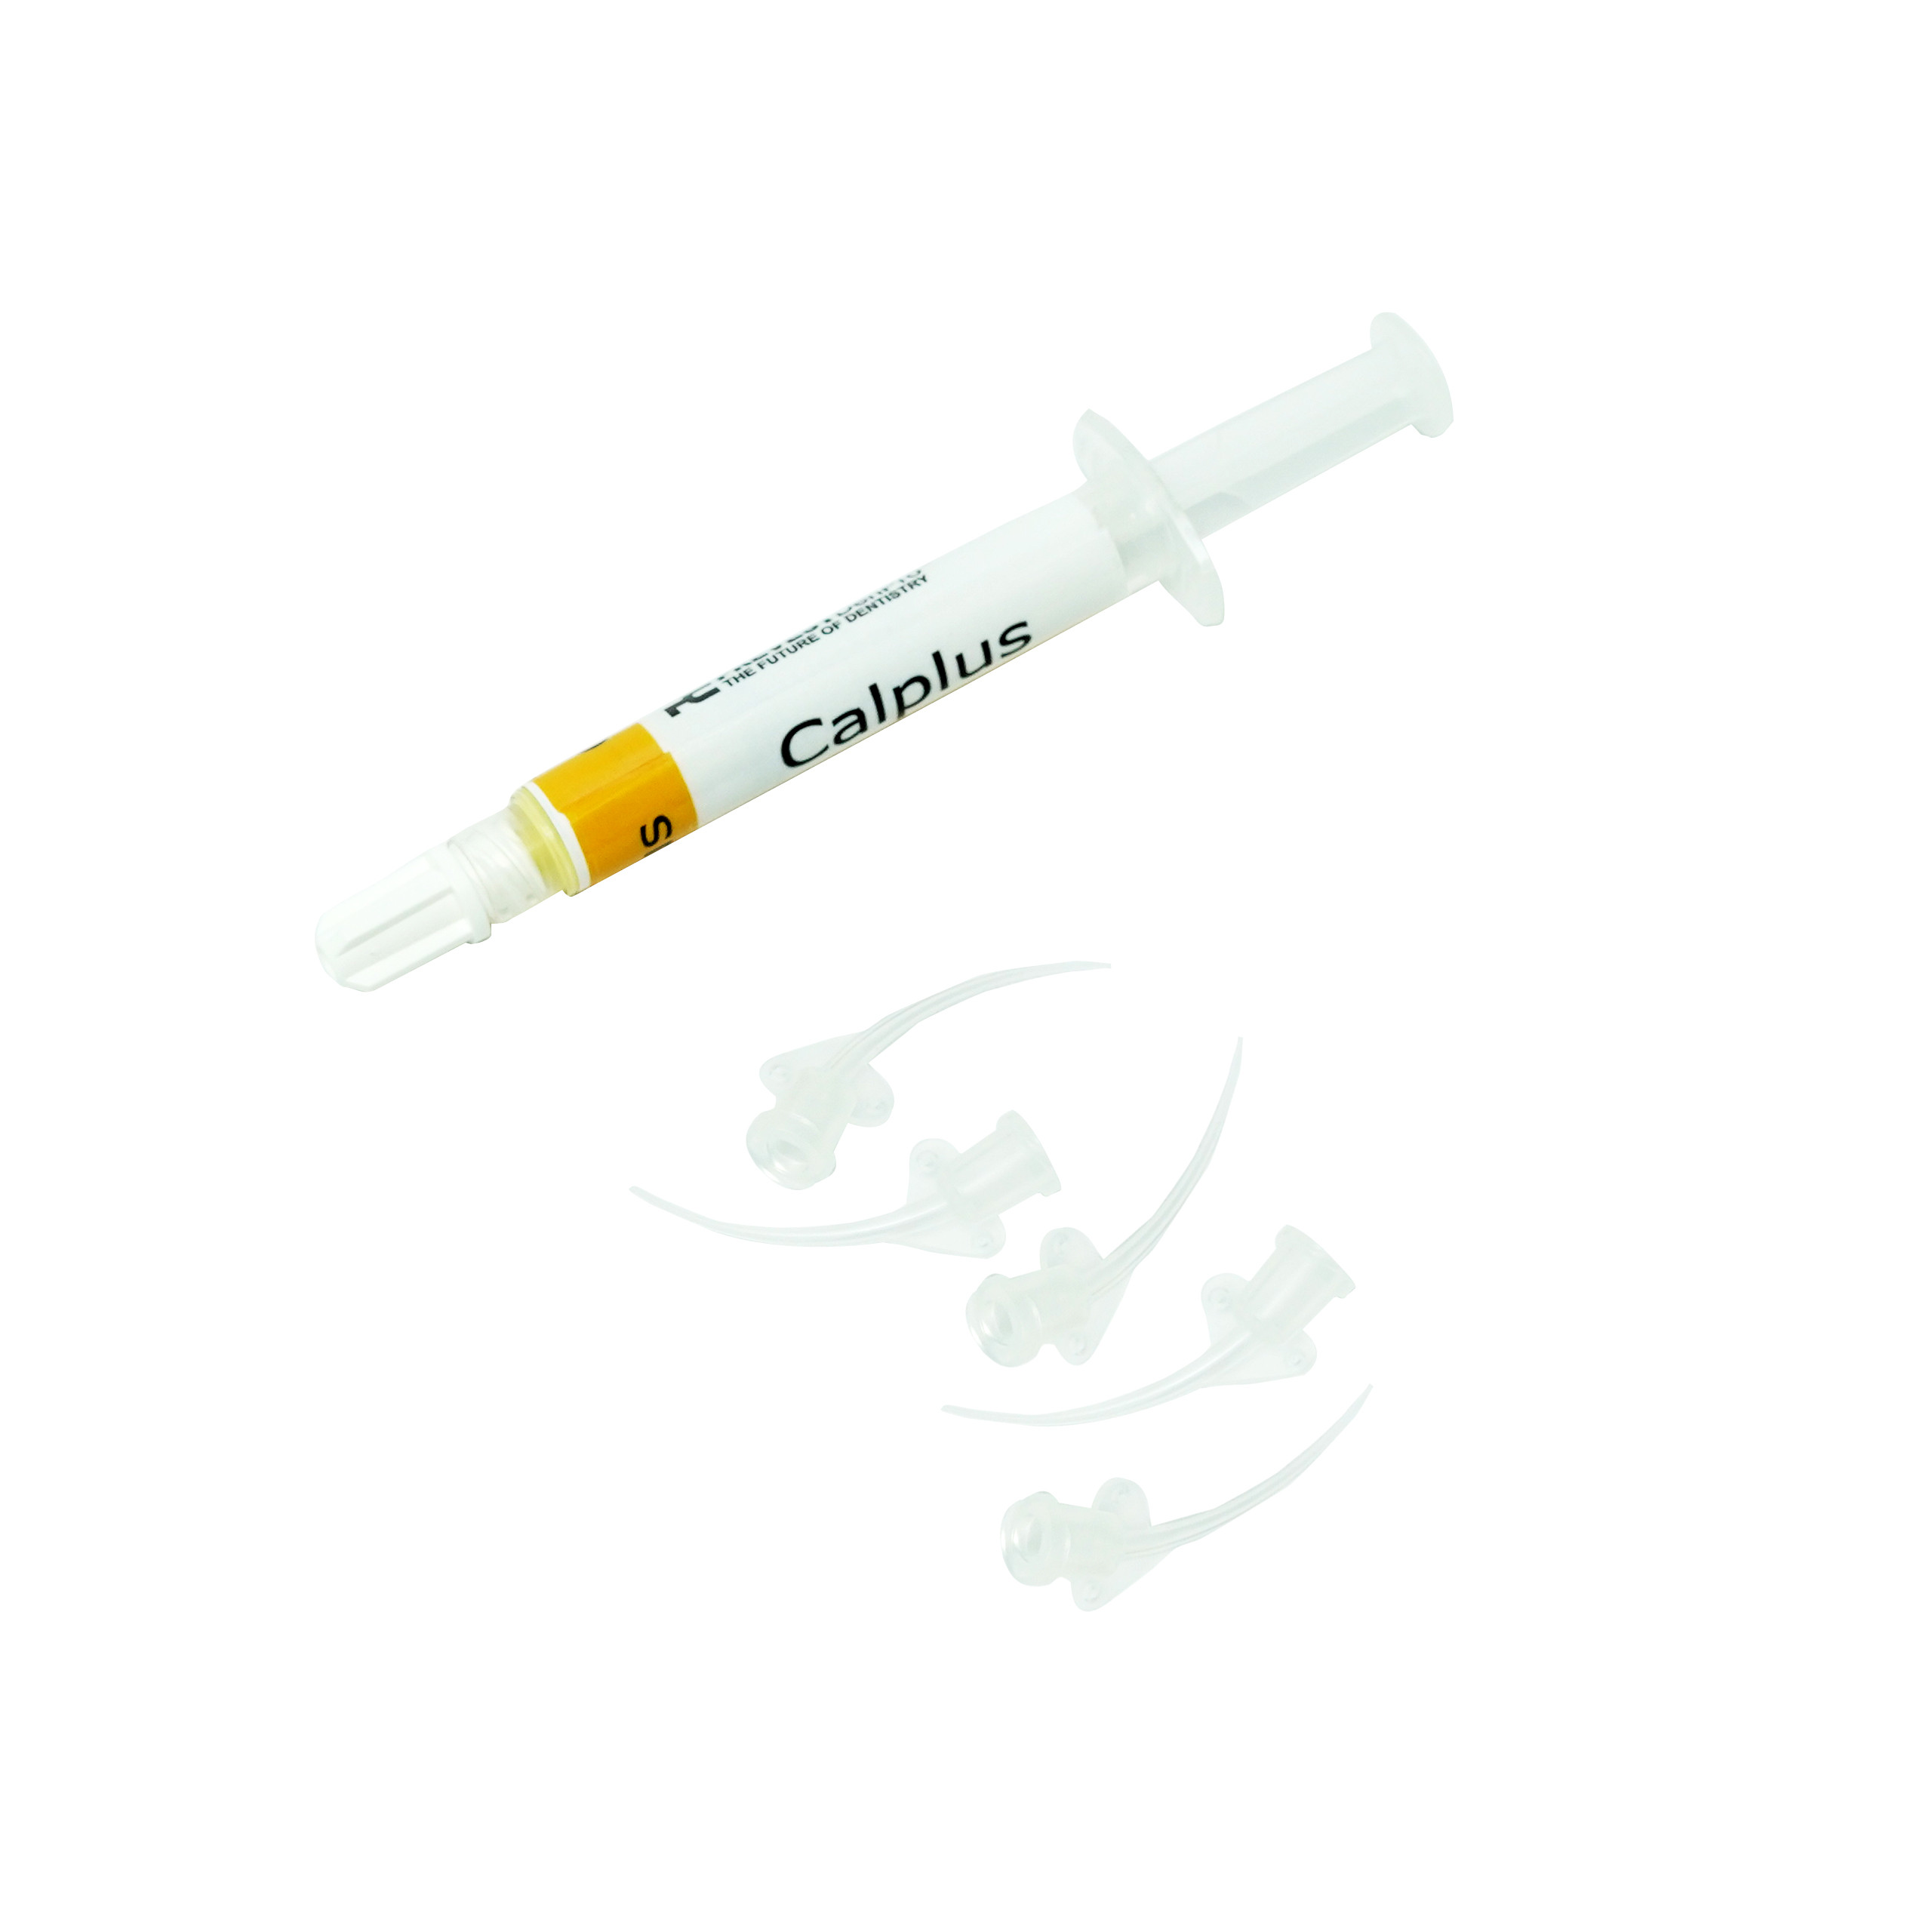 Prevest Denpro CalPlus Calcium Hydroxide Paste 2gm Syringe